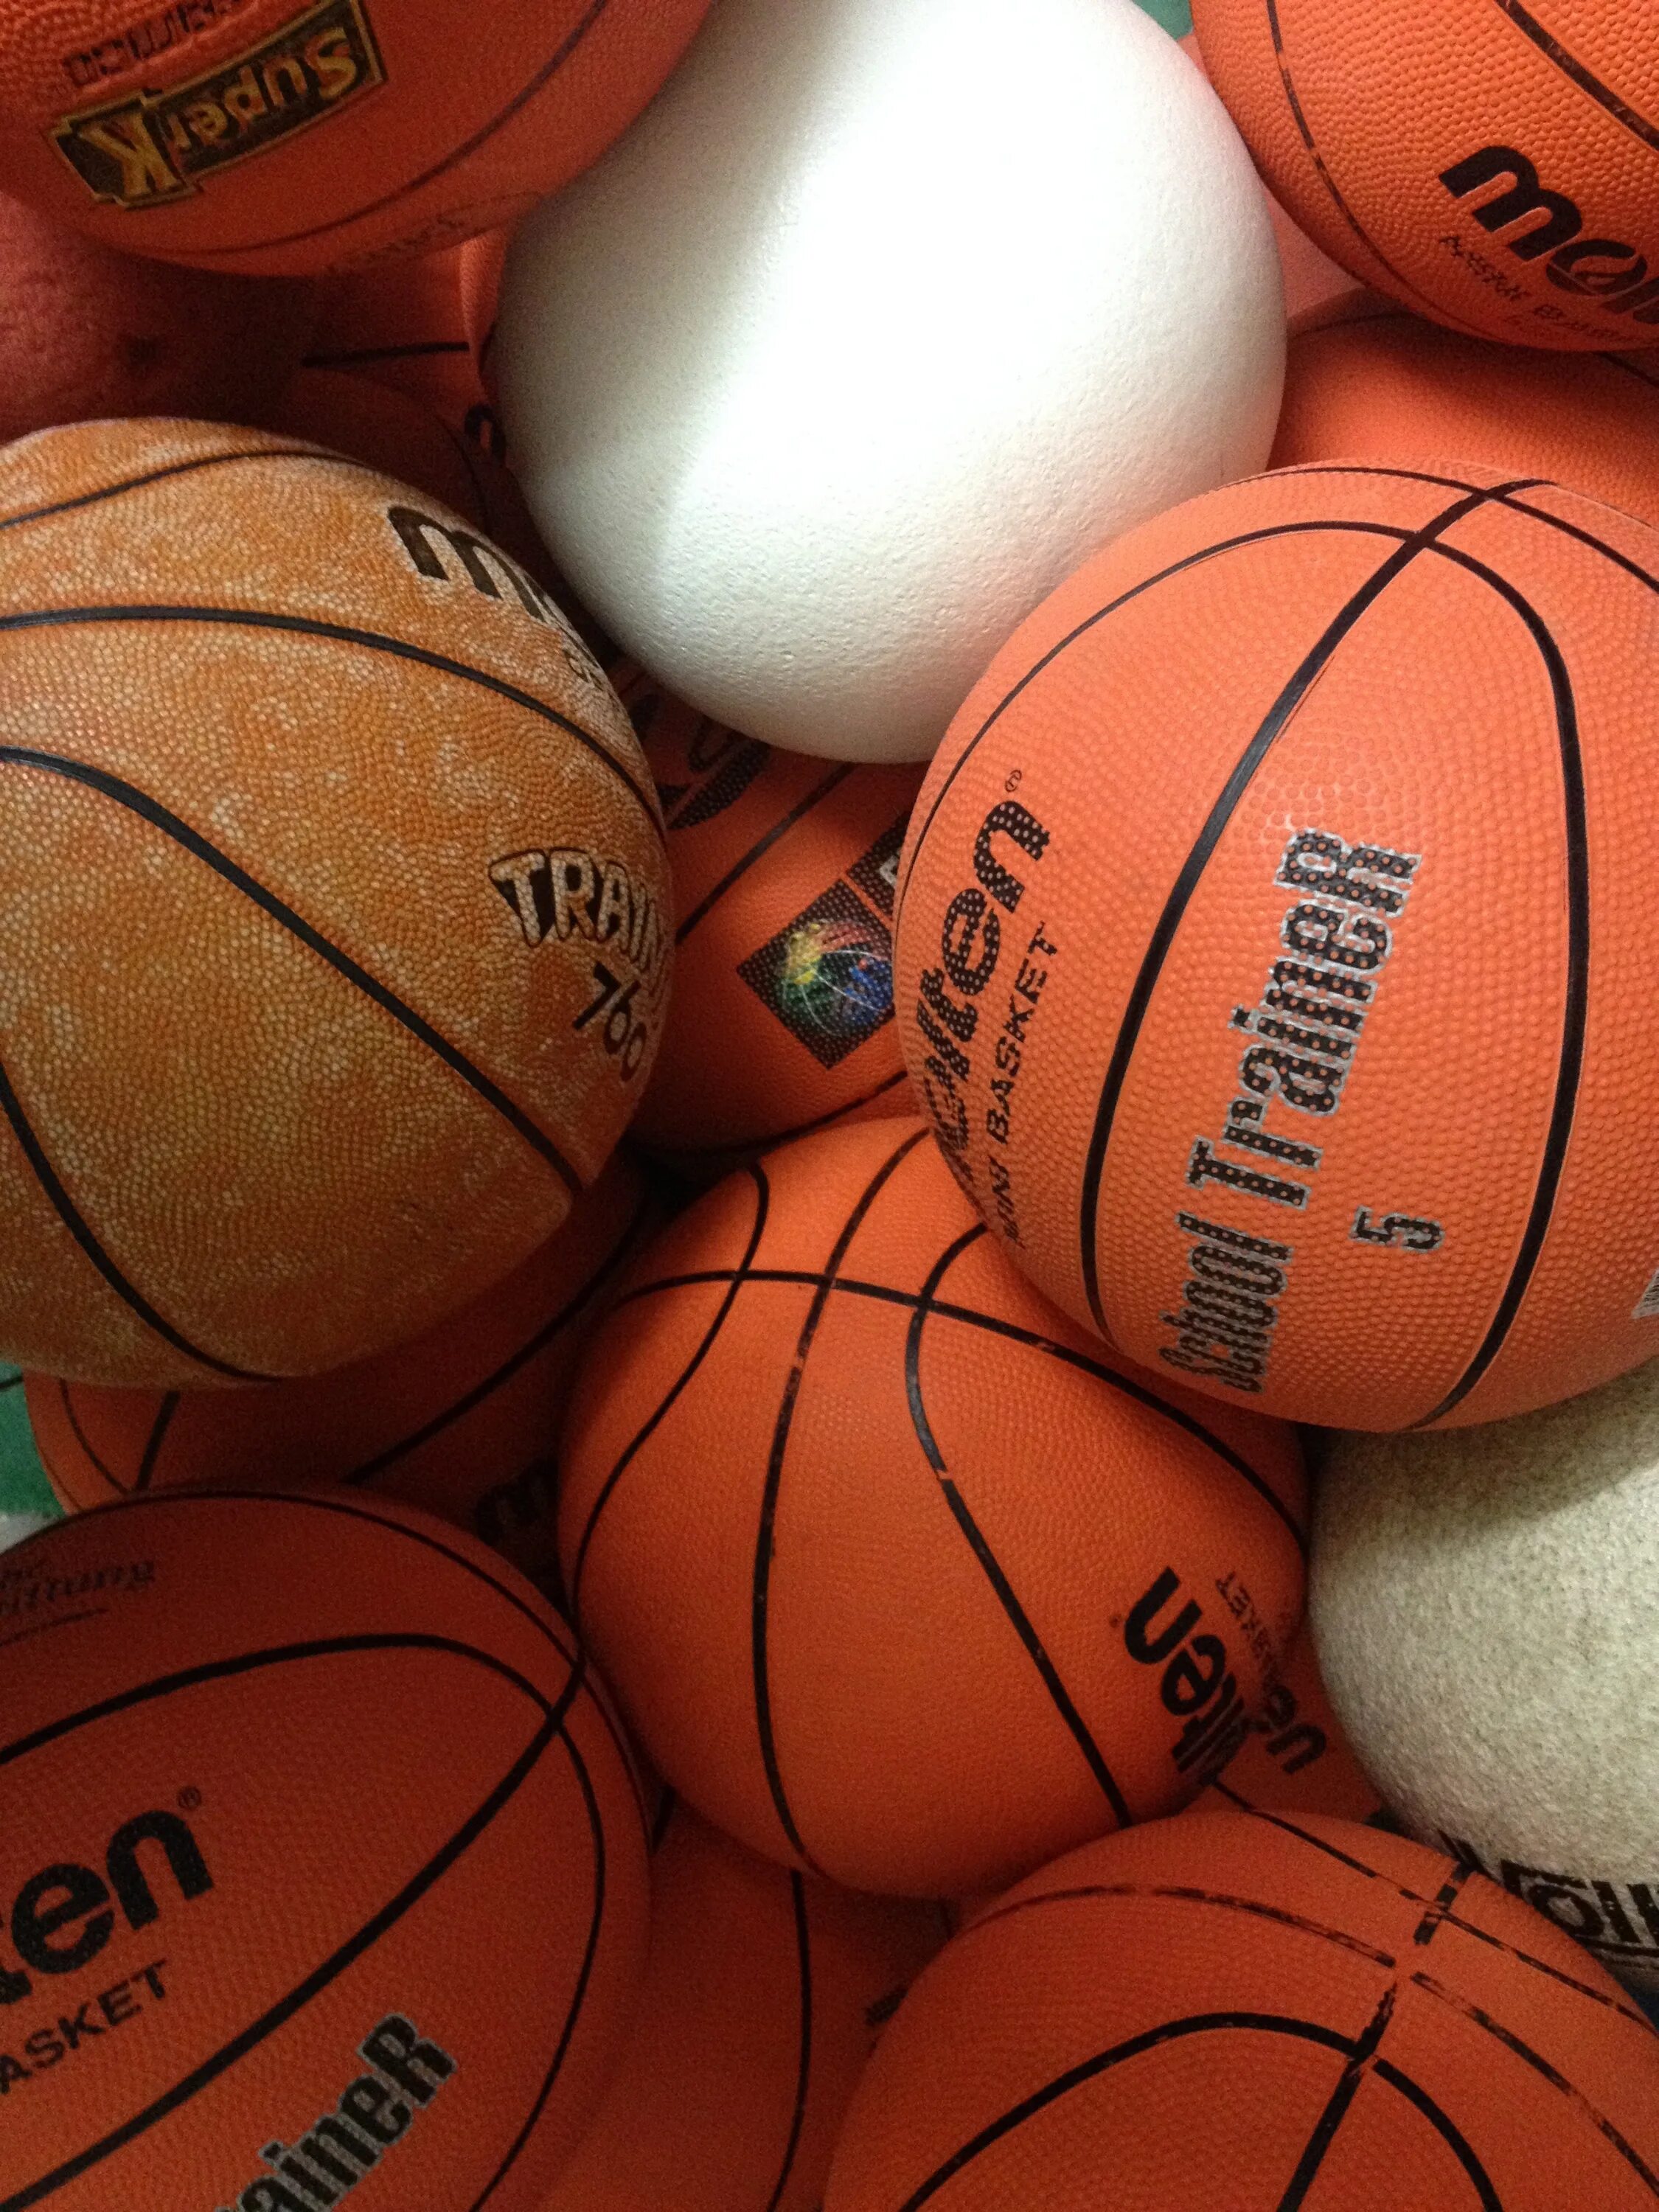 Спортивные магазины баскетбольные мячи. Спортивные мячи. Баскетбол. Красивые баскетбольные мячи. Баскетбольные мячи много.